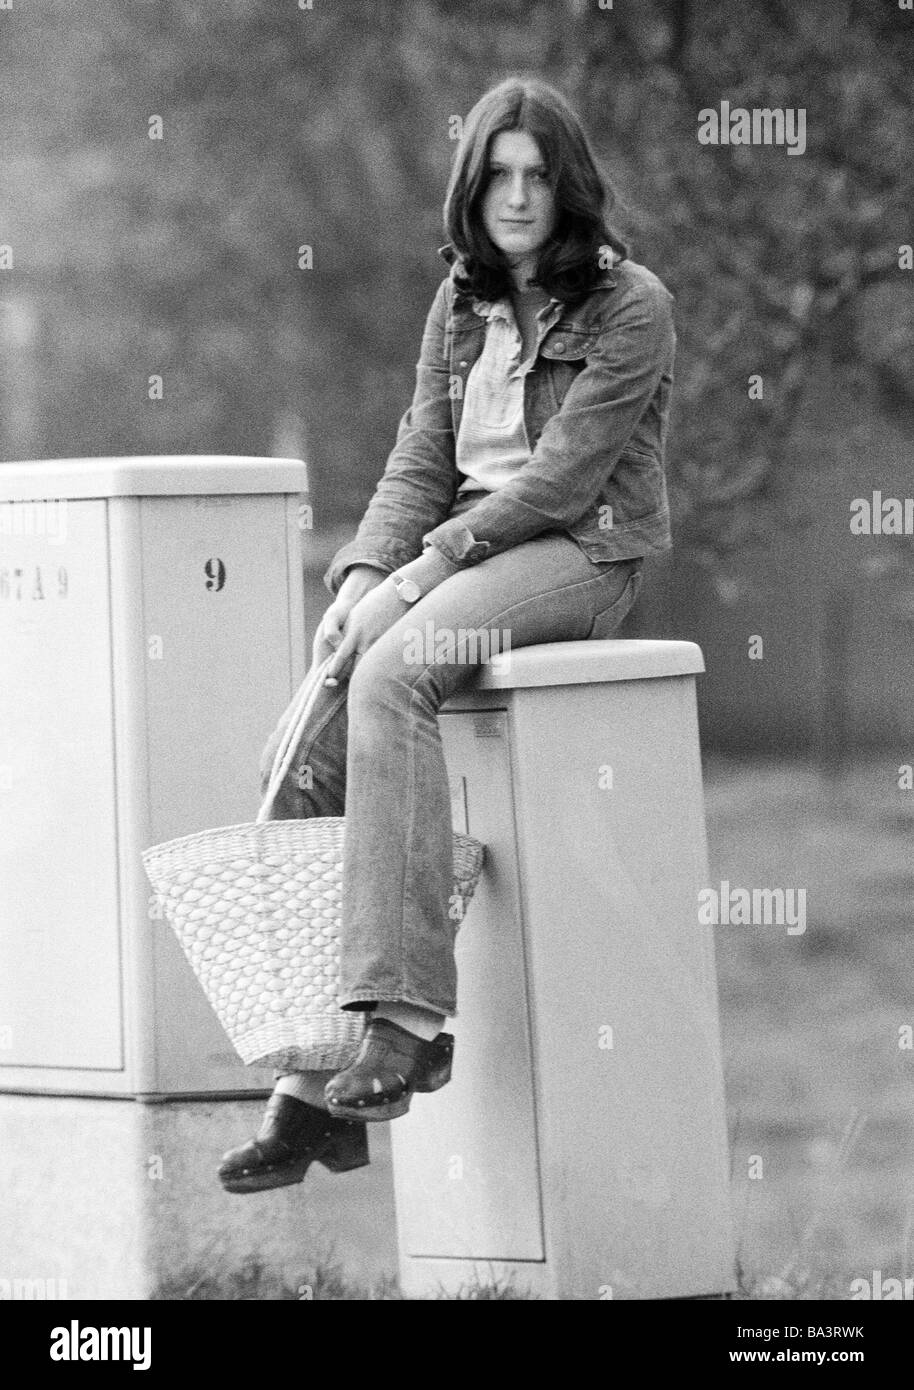 Negli anni settanta, foto in bianco e nero, persone, ragazza giovane con una borsa da shopping languidly si siede su una scatola, di età compresa tra 16 a 20 anni Foto Stock